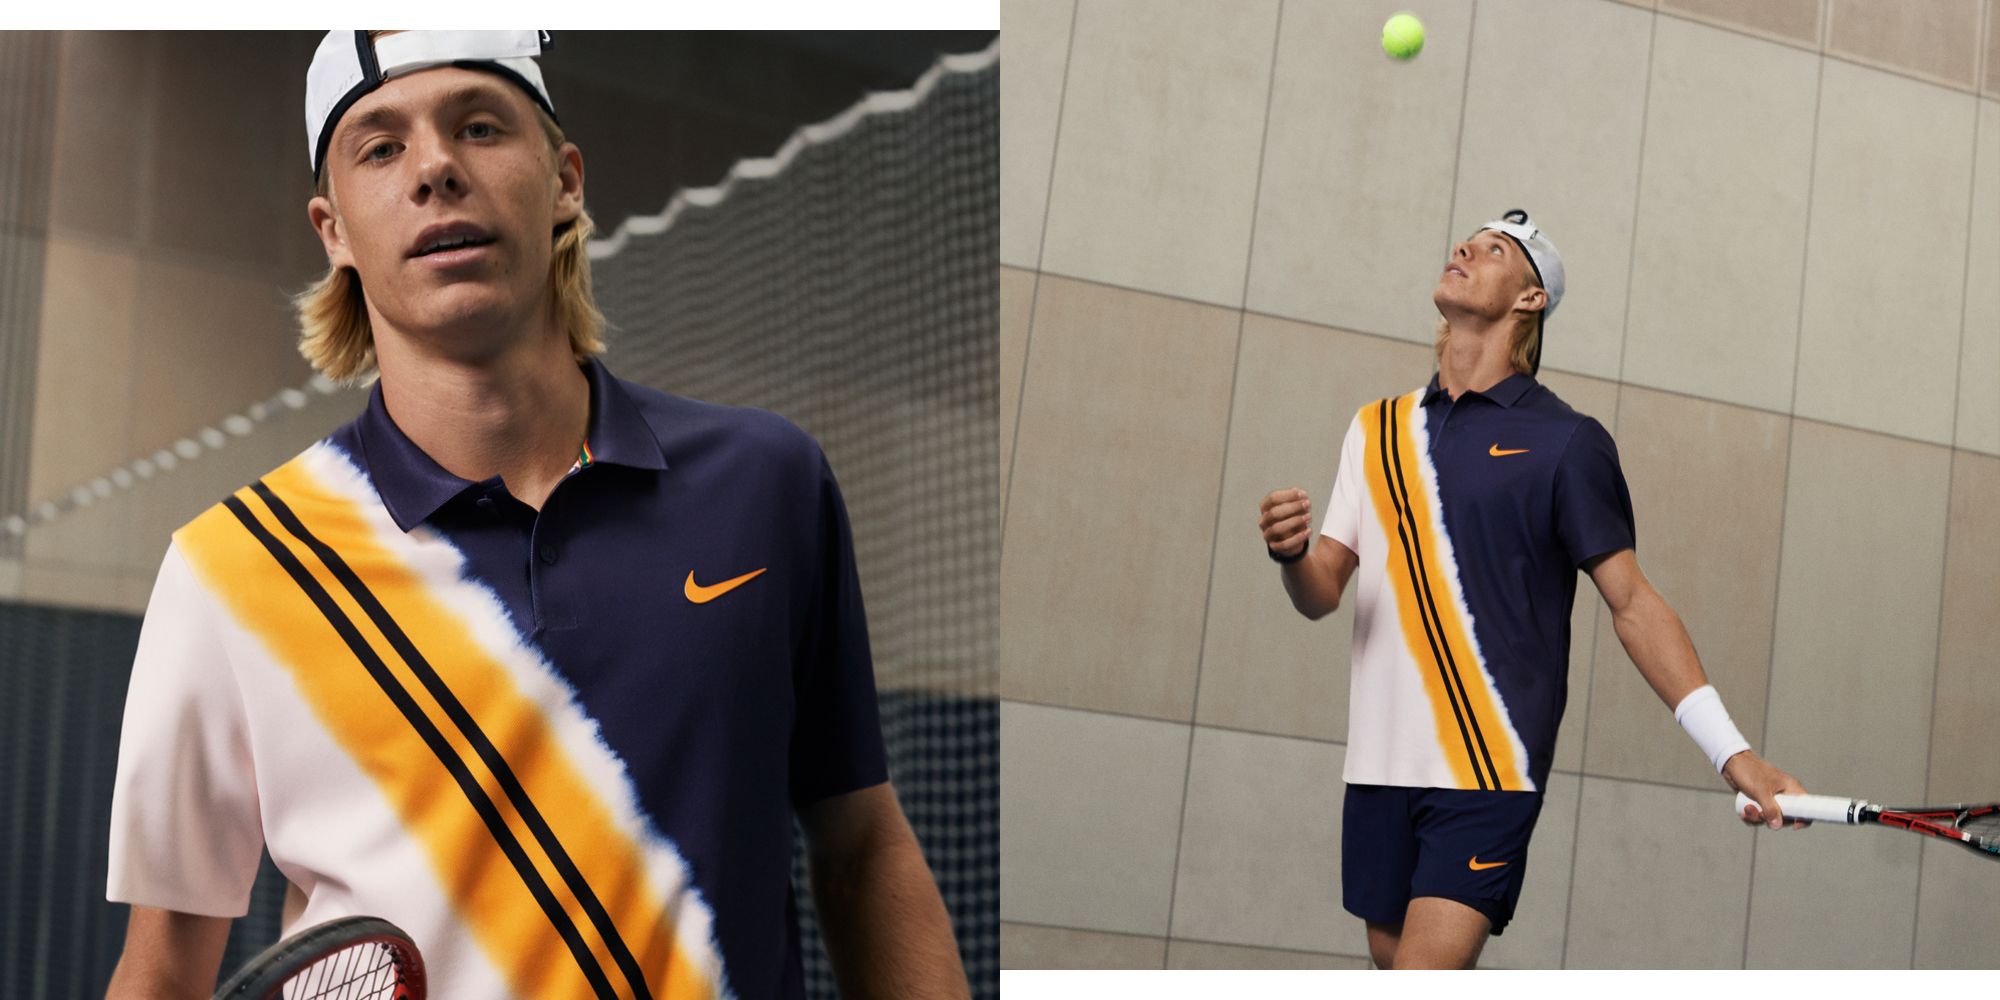 NikeCourt Open Tennis Outfits - Tennis Style